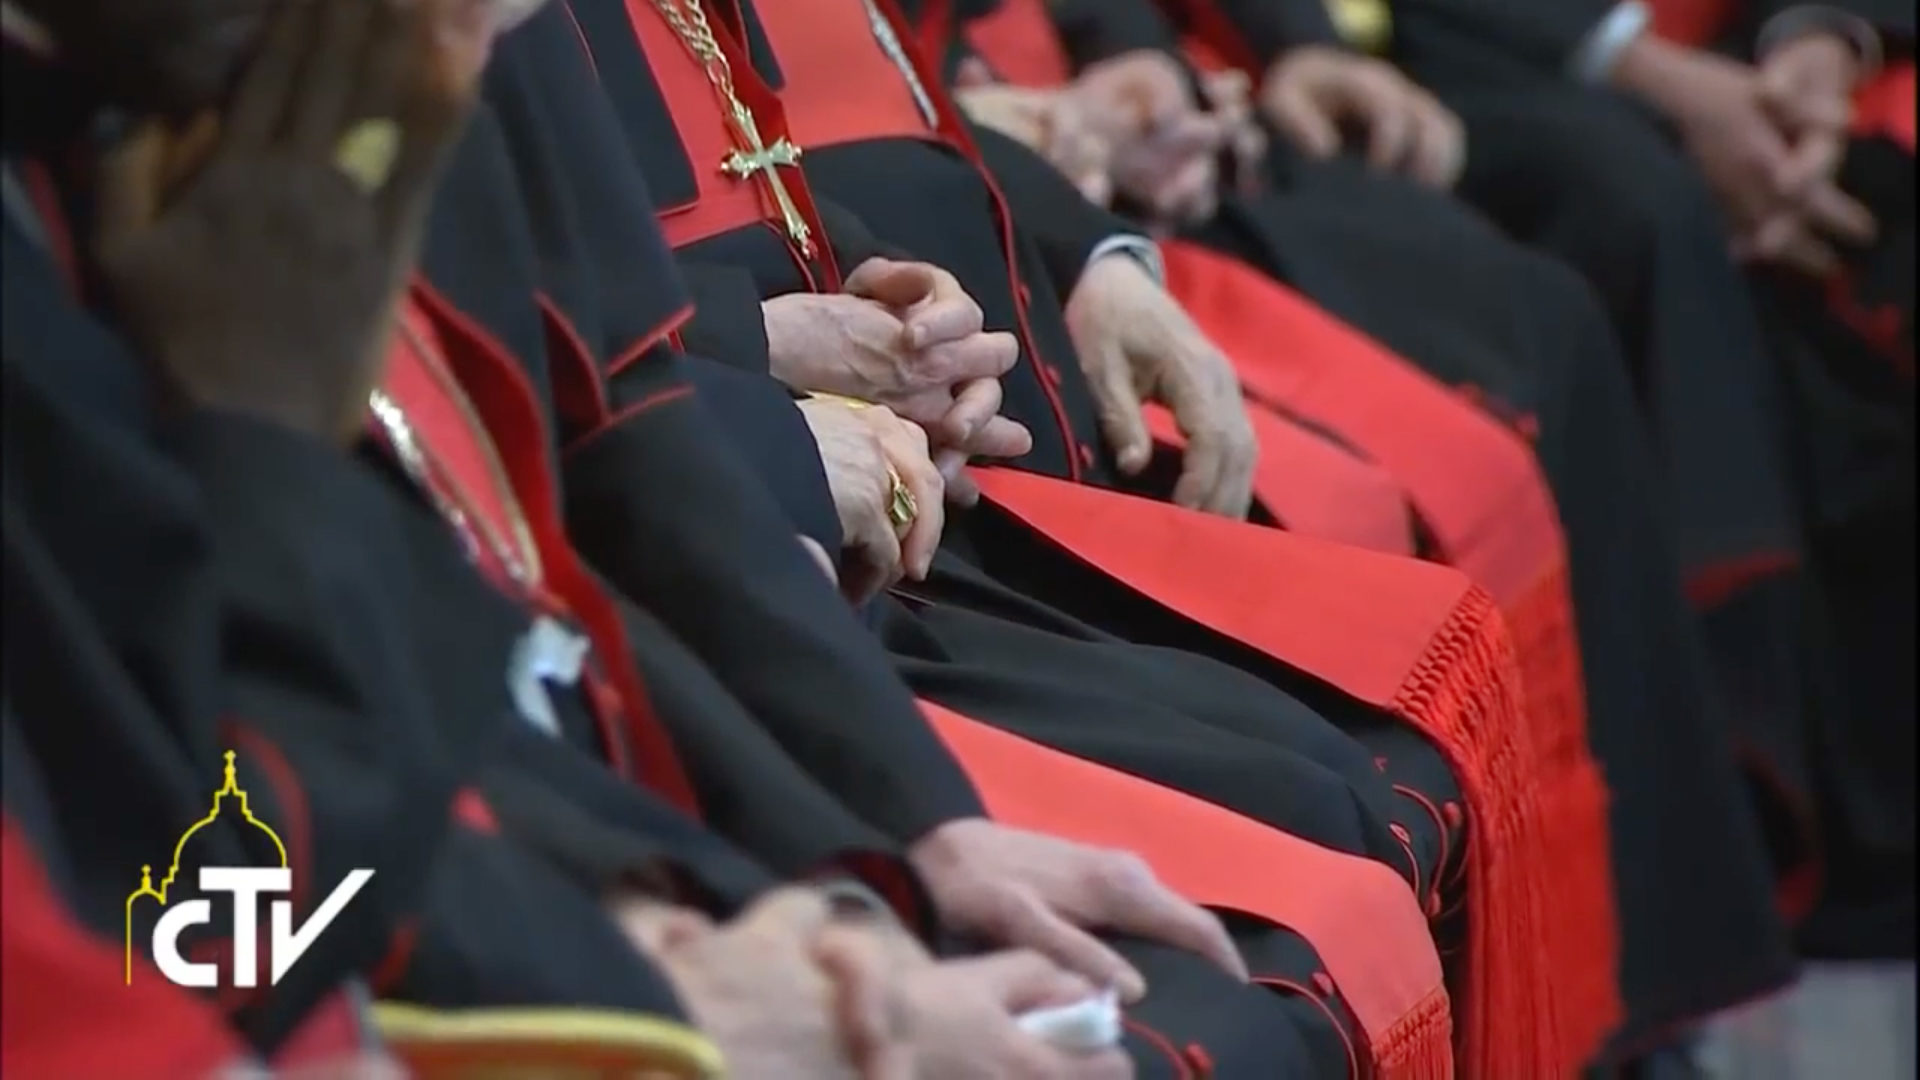 Le pape François a présidé le 29 mai 2017 dans la salle Bologna au Vatican une réunion avec les chefs de dicastères de la Curie romaine (Illustration: youtube/CTV)